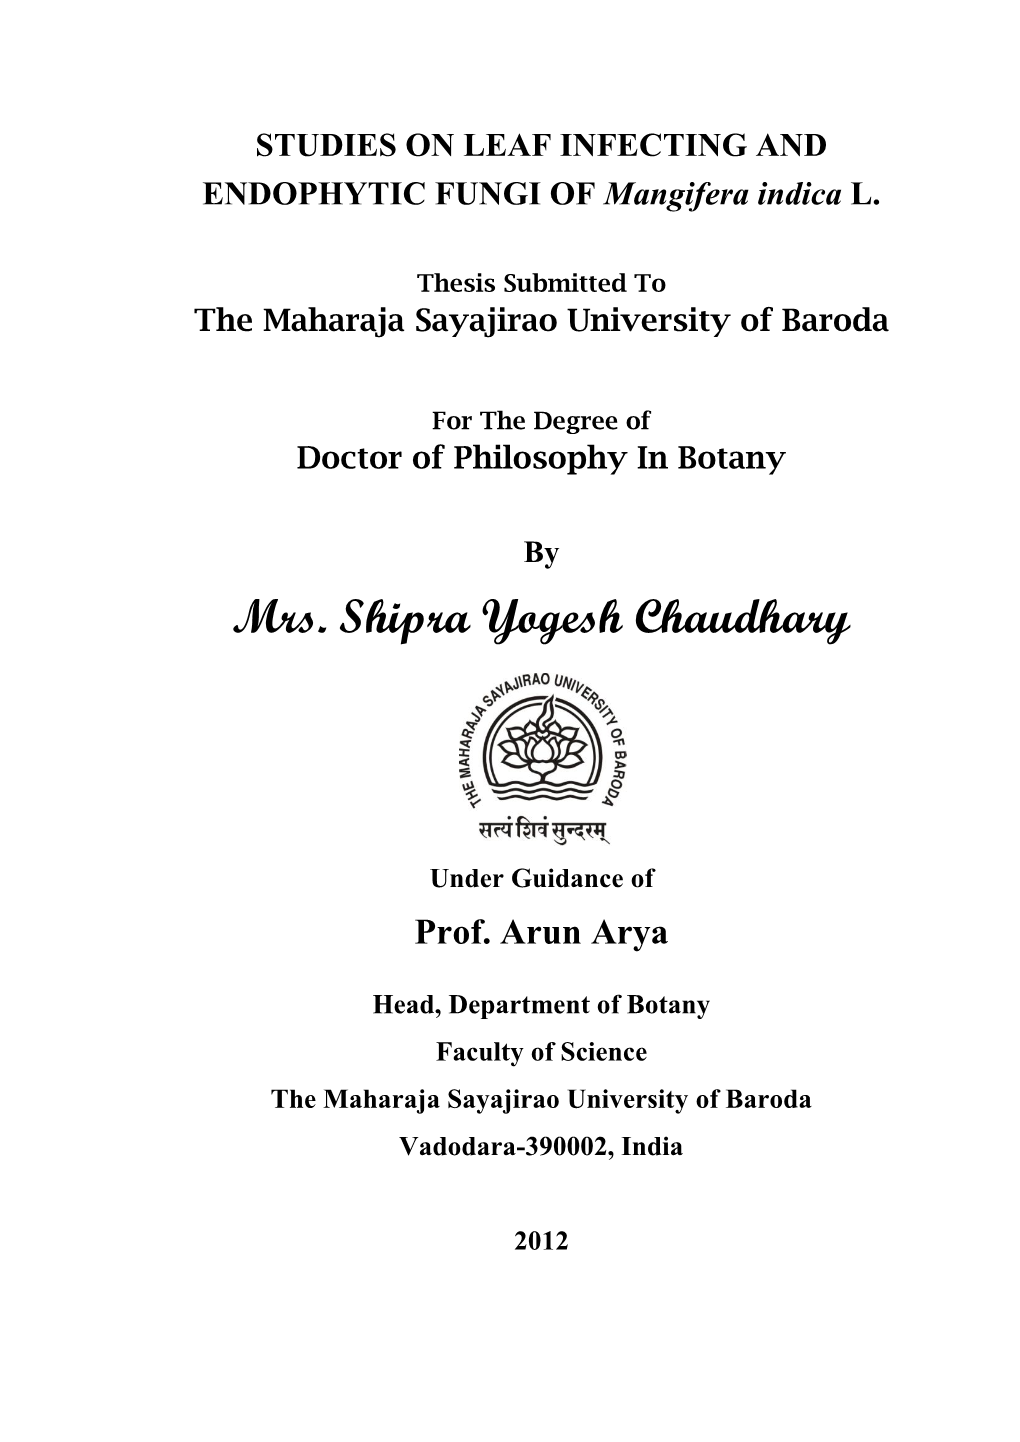 Mrs. Shipra Yogesh Chaudhary